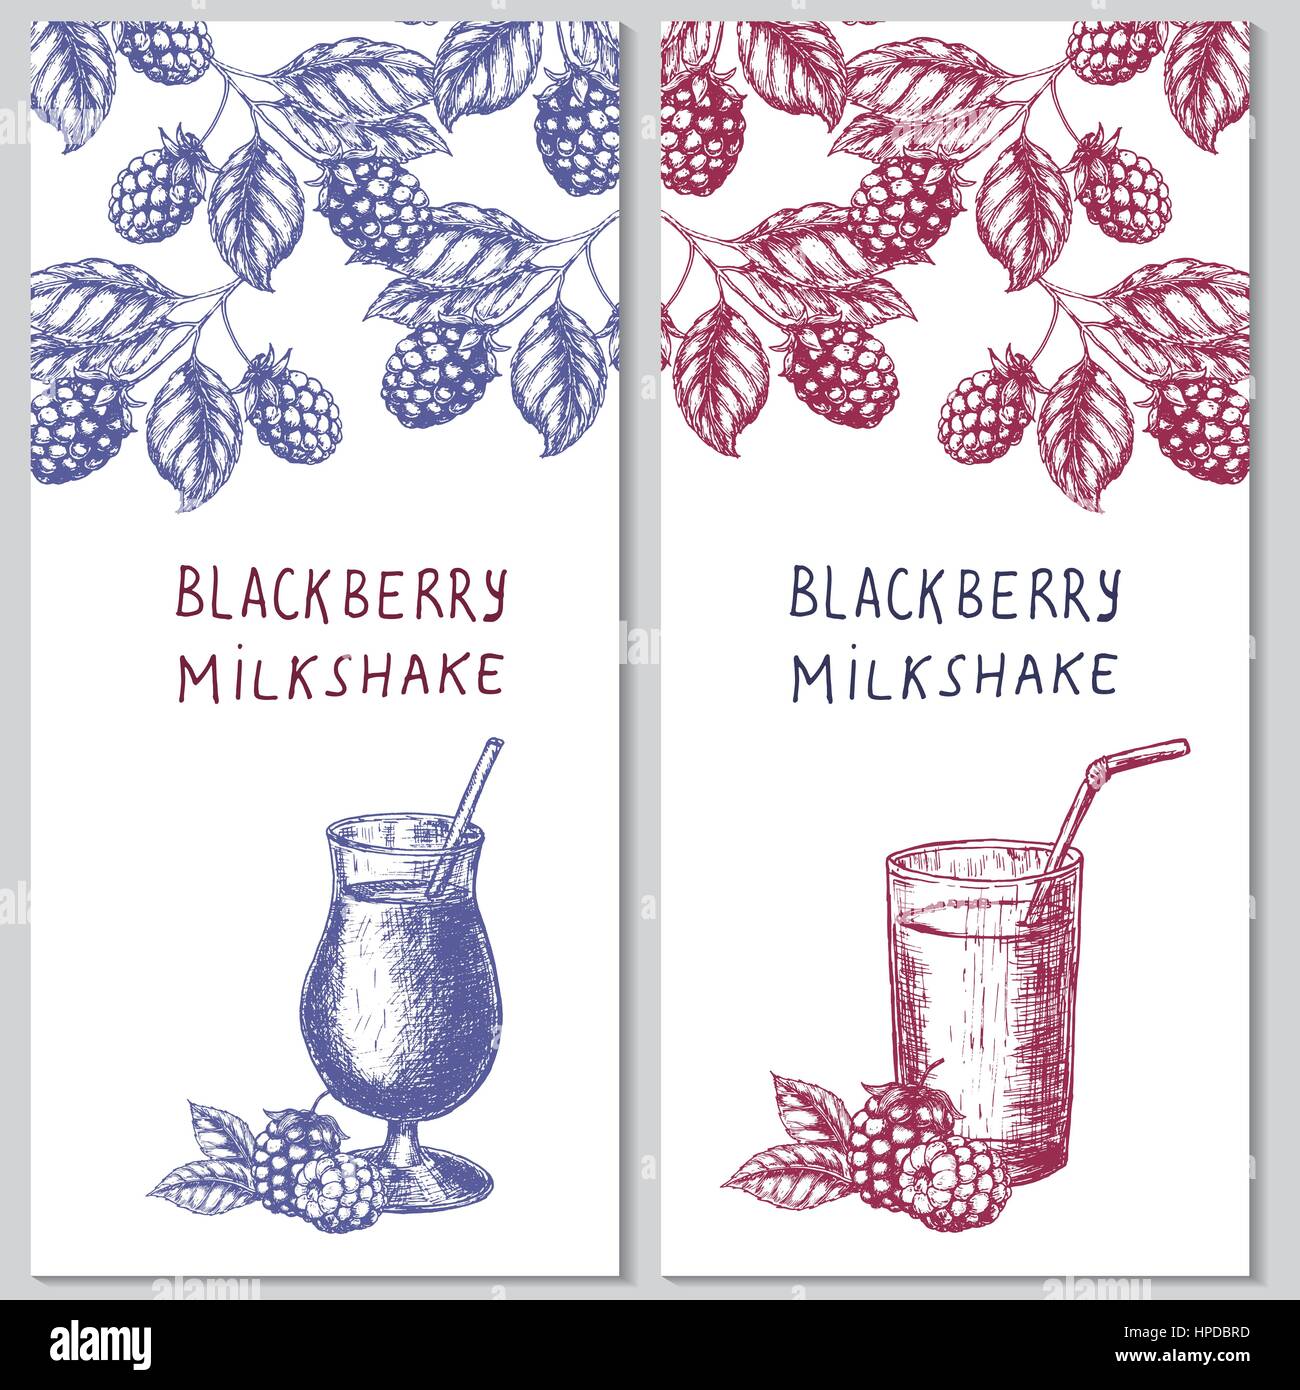 Zwei vertikale Ausrichtung hand gezeichnete Flyer für Beere Milchshakes. Vektor-Template-Design. Stock Vektor